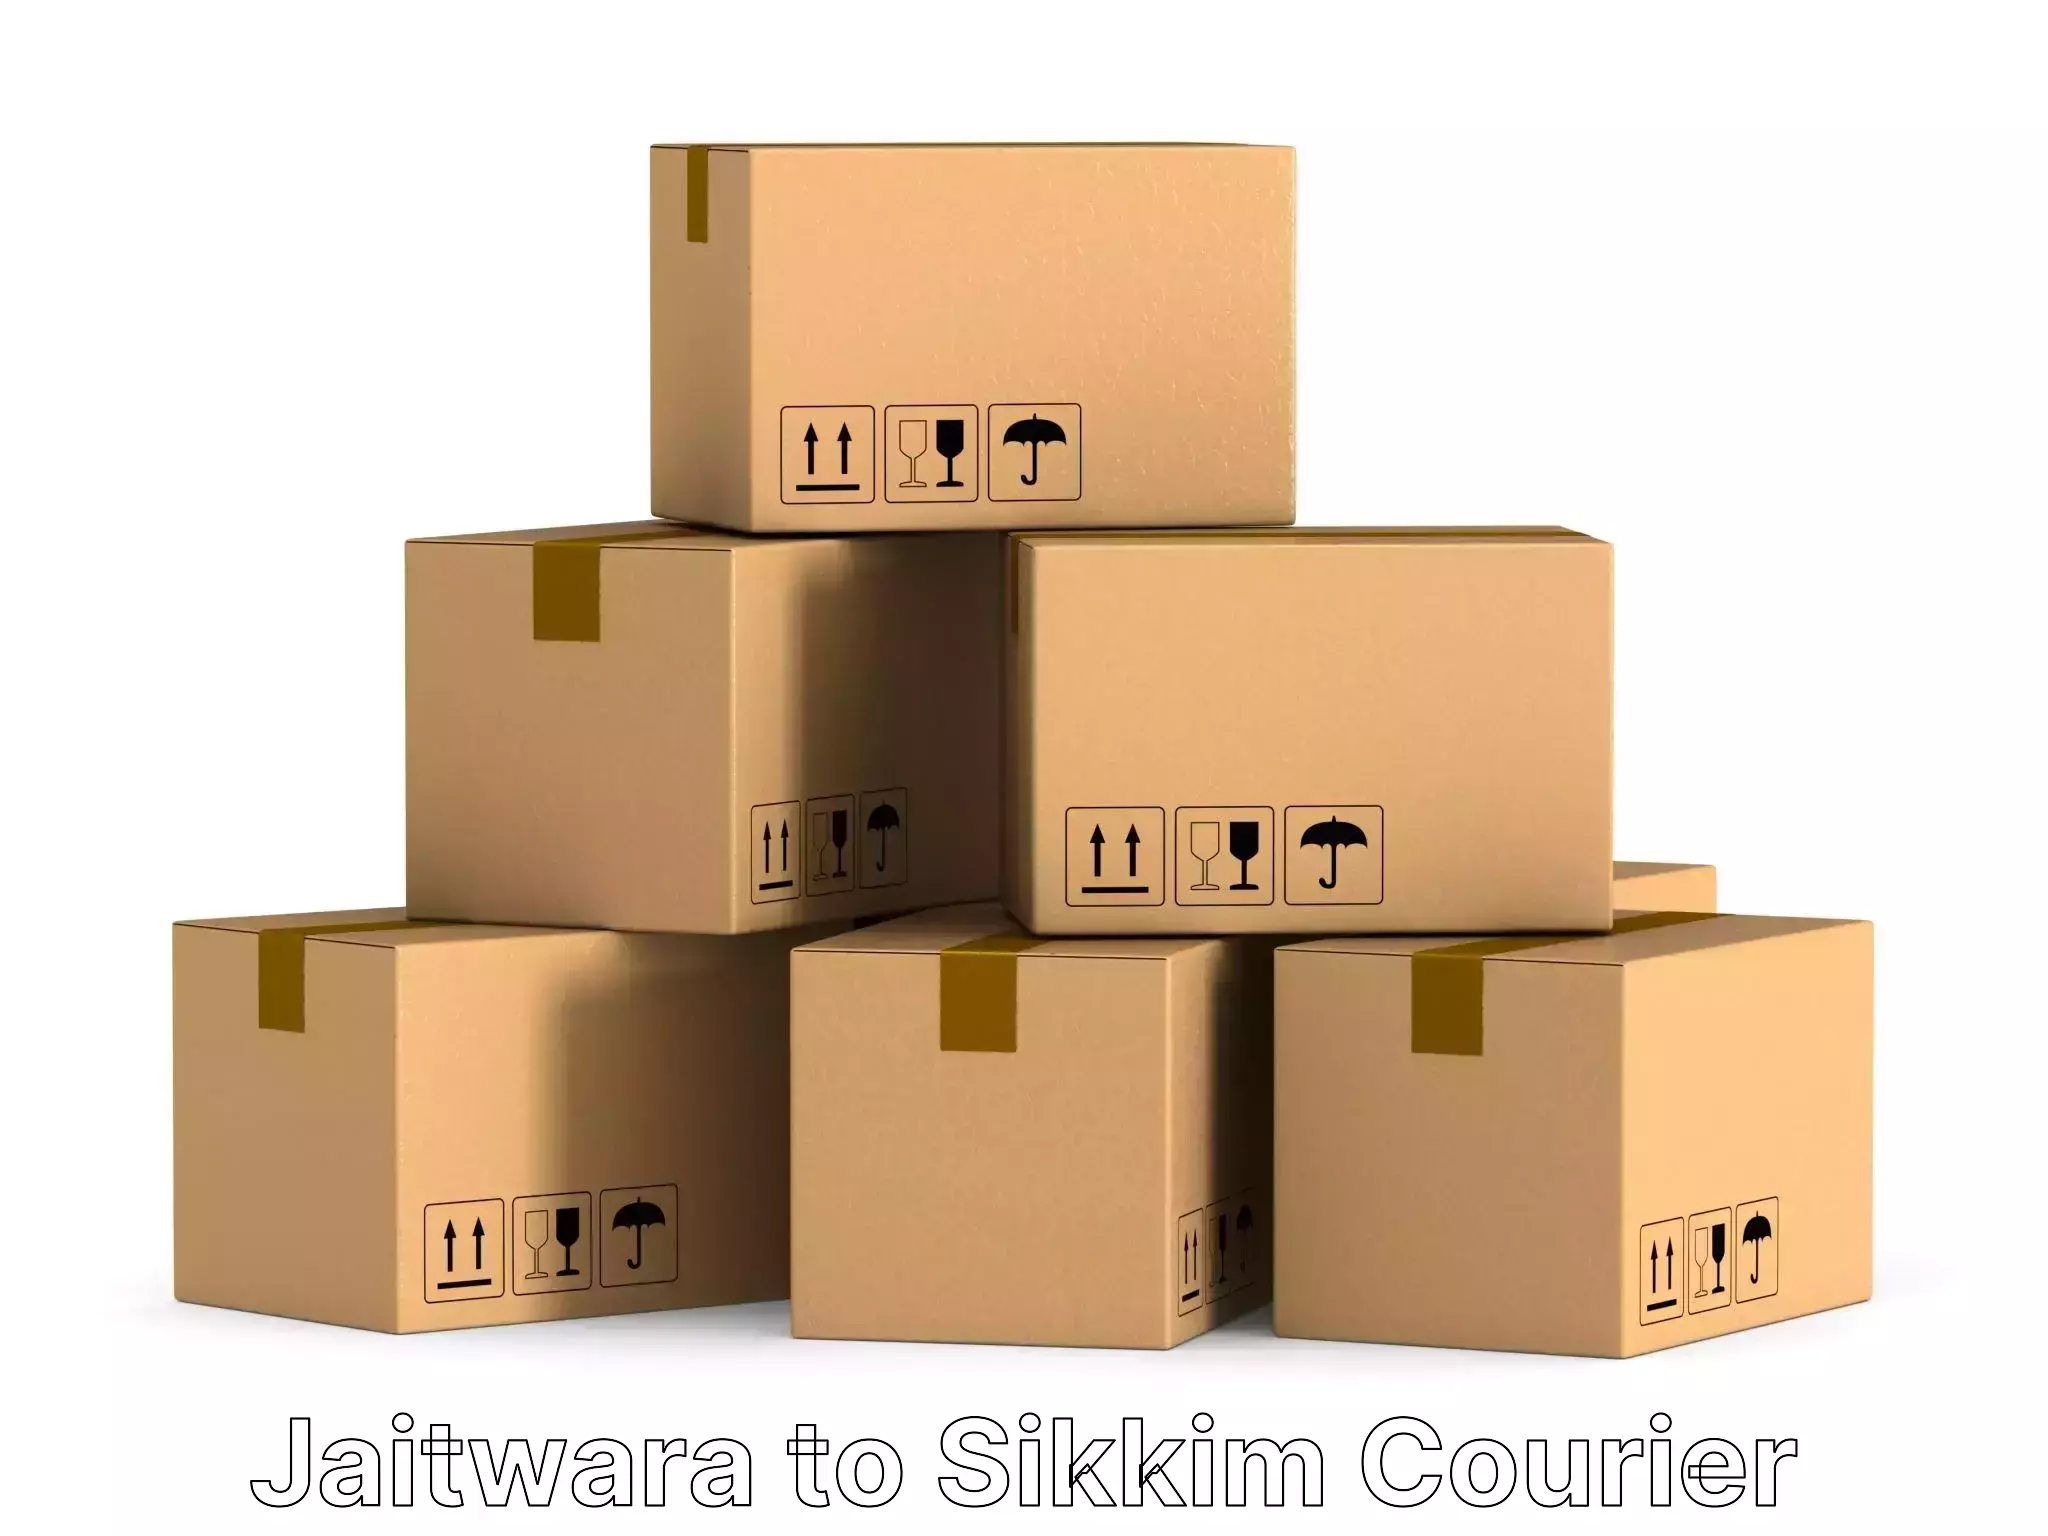 Furniture moving plans Jaitwara to Sikkim